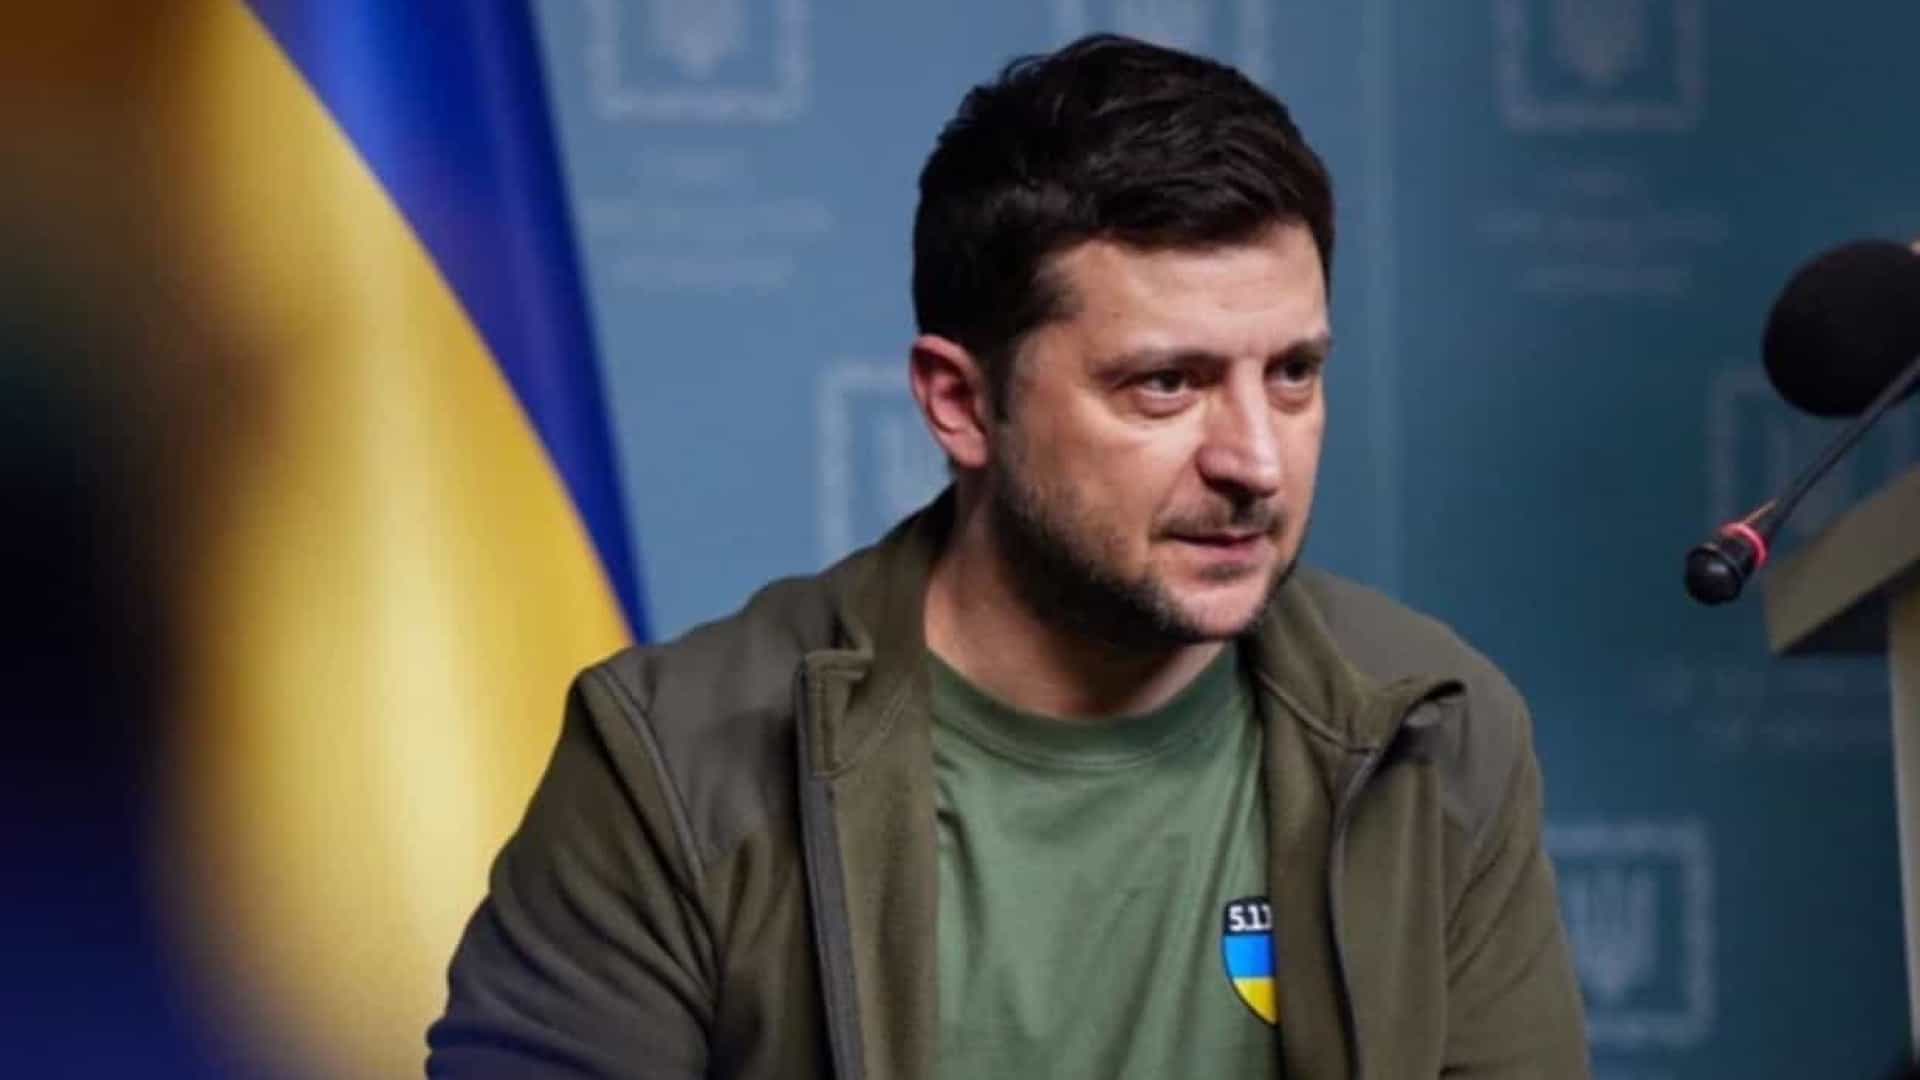 "Poderia ter sido o fim da História para a Ucrânia e a Europa"